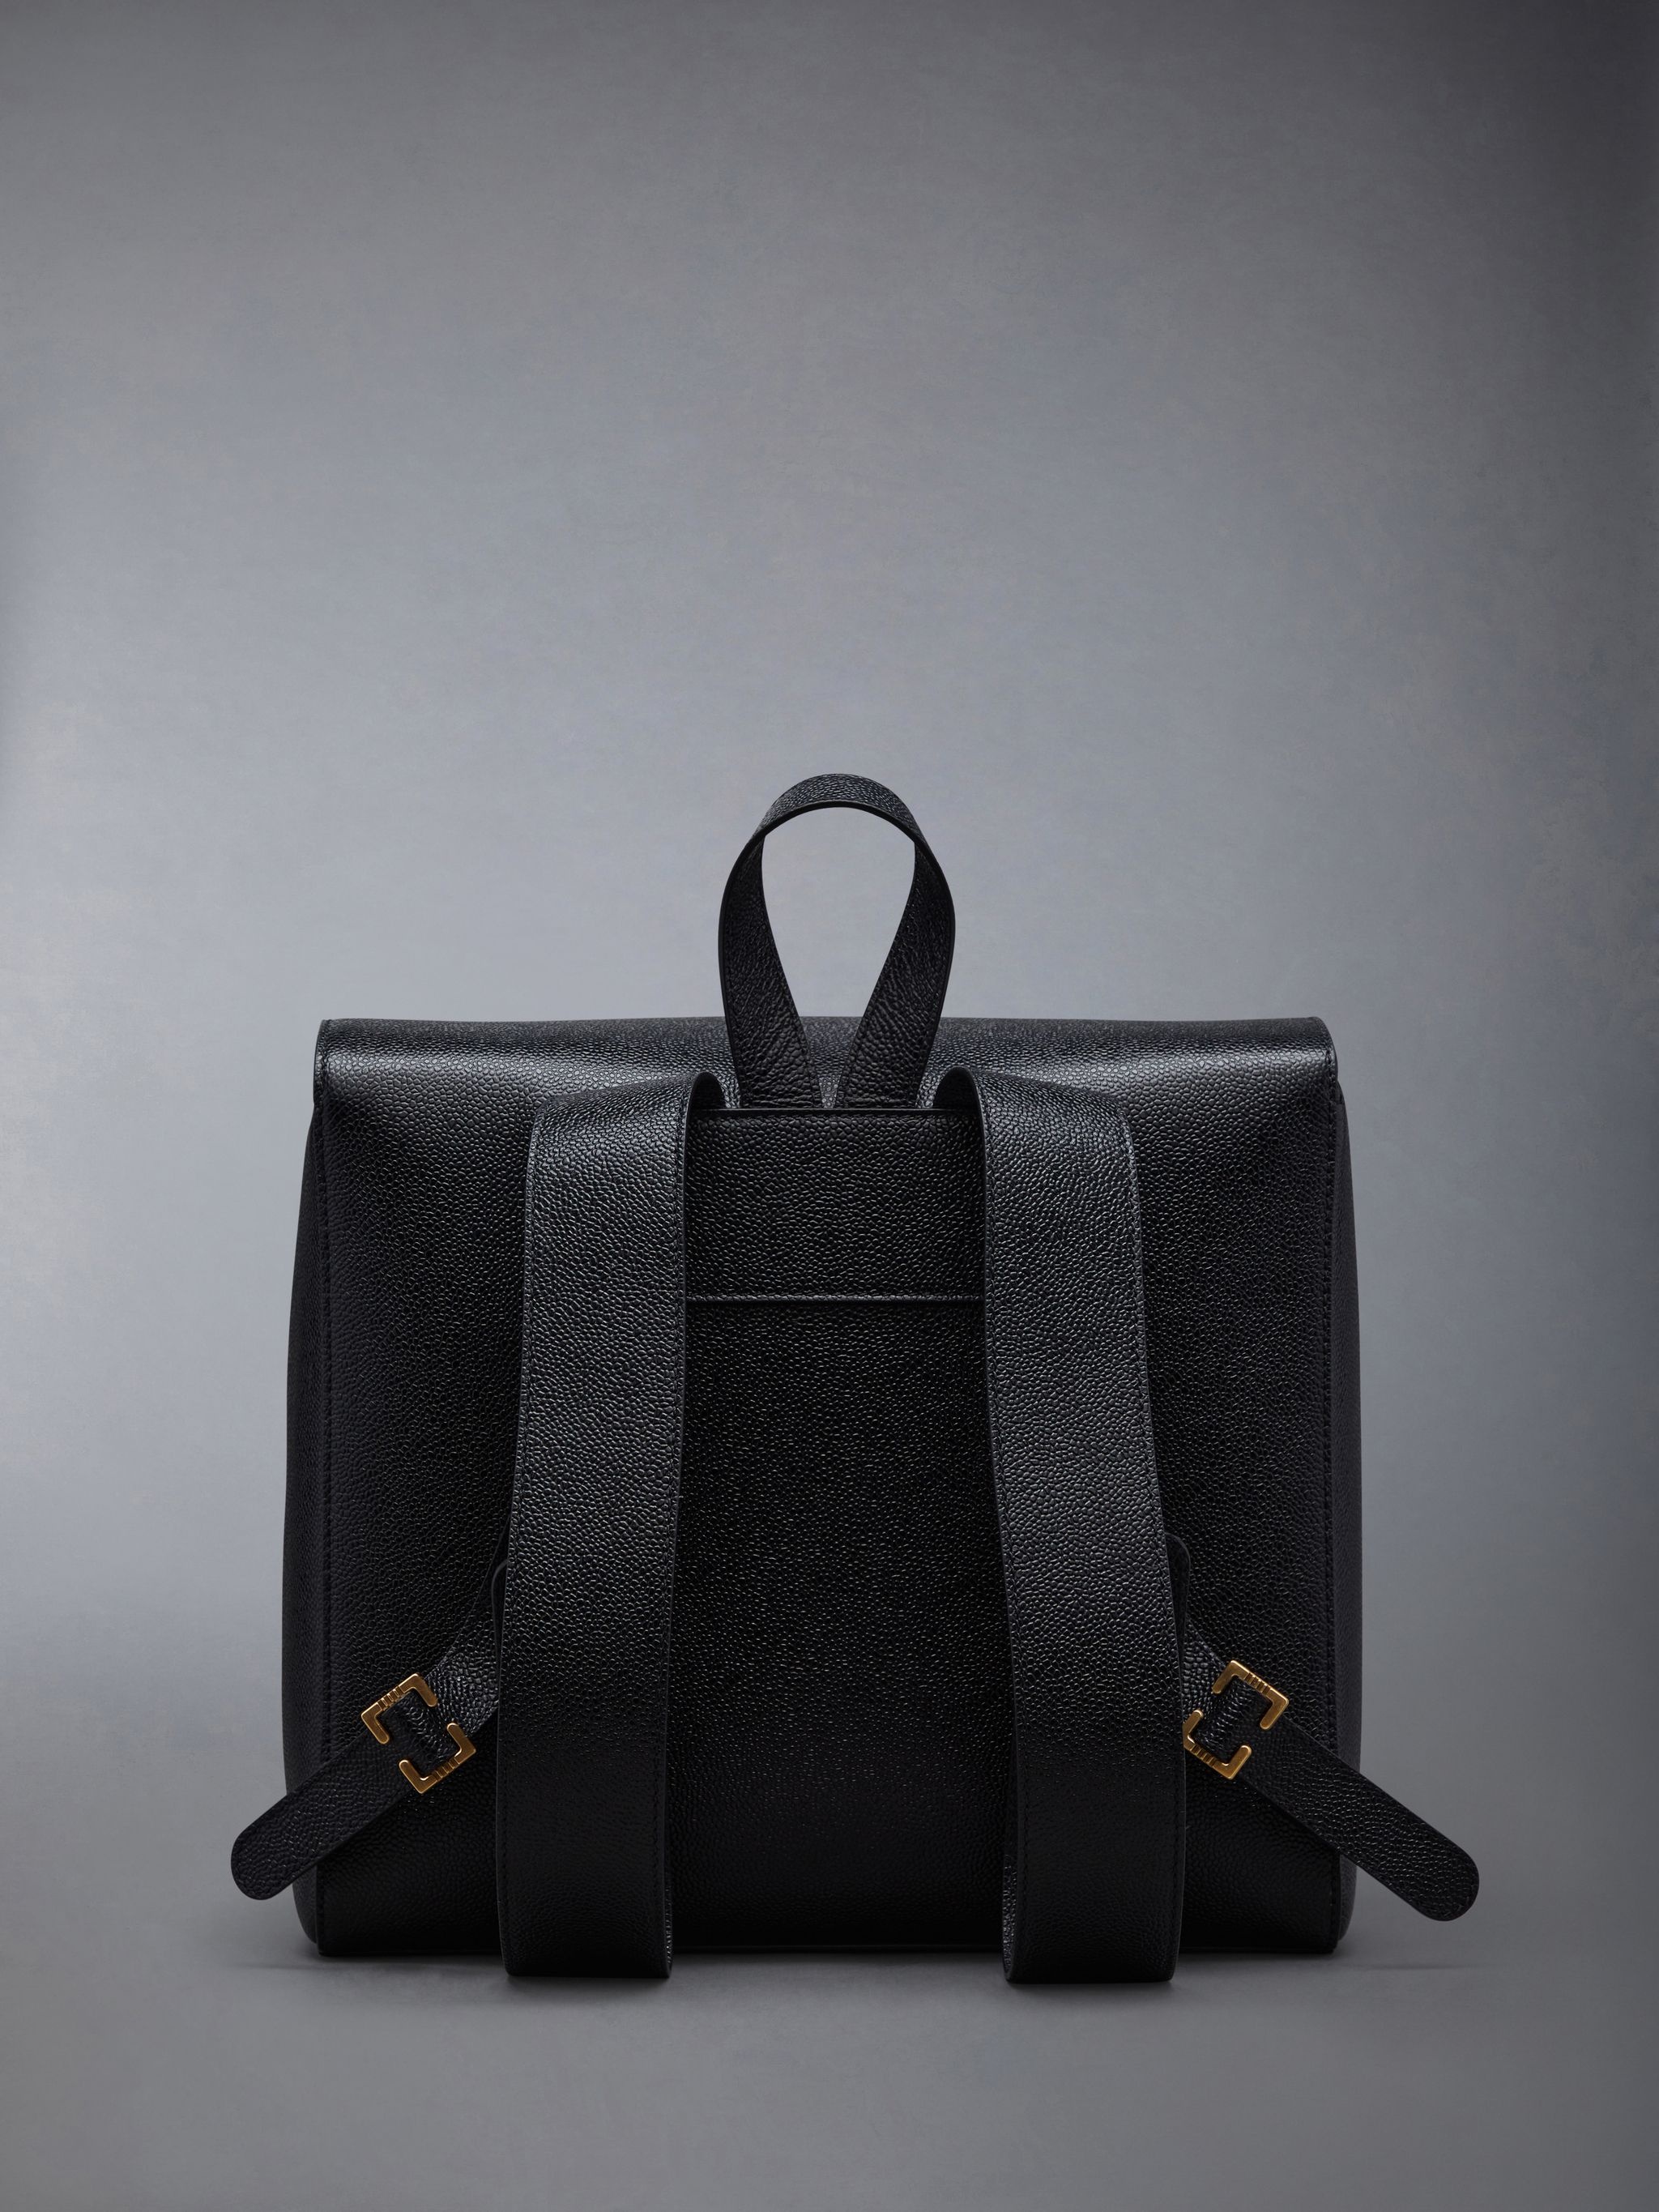 RWB structured backpack - 6